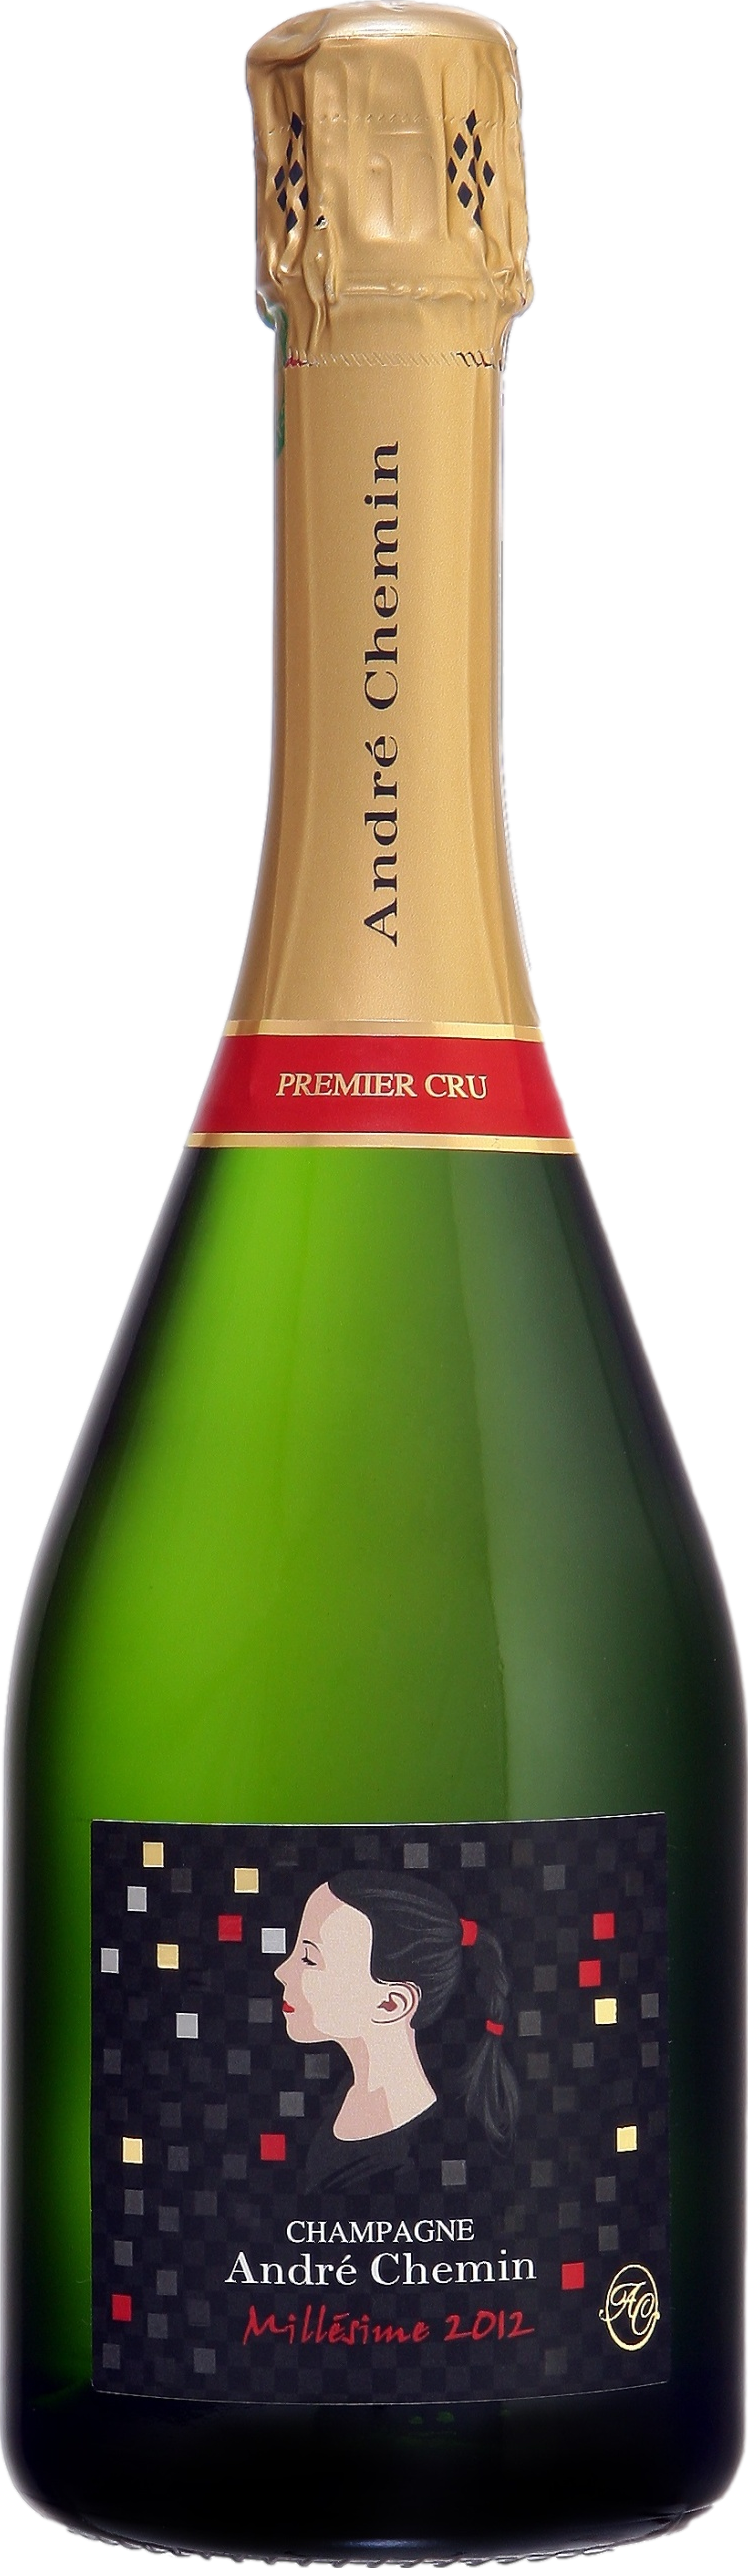 01.2012 günstig Kaufen-Champagne Andre Chemin Premier Cru Millesime Brut 2012. Champagne Andre Chemin Premier Cru Millesime Brut 2012 . 